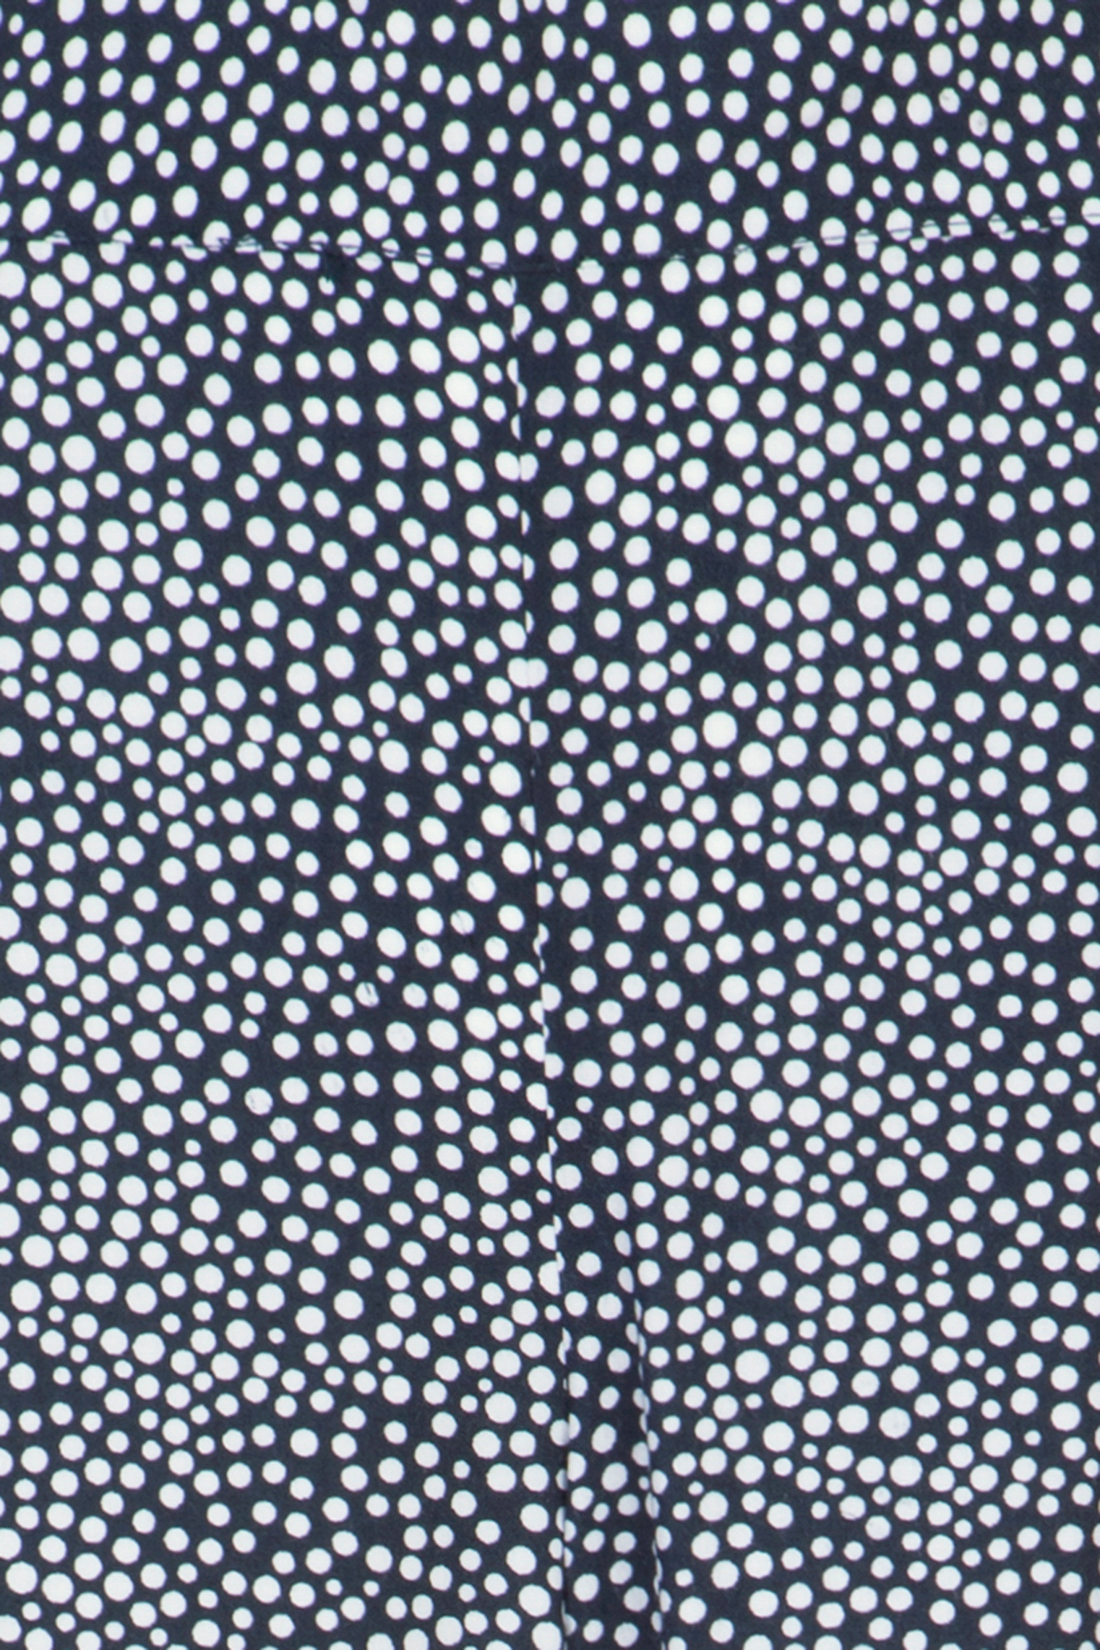 Брюки-палаццо из материала с принтом (арт. baon B297015), размер L, цвет dark navy printed#синий Брюки-палаццо из материала с принтом (арт. baon B297015) - фото 3